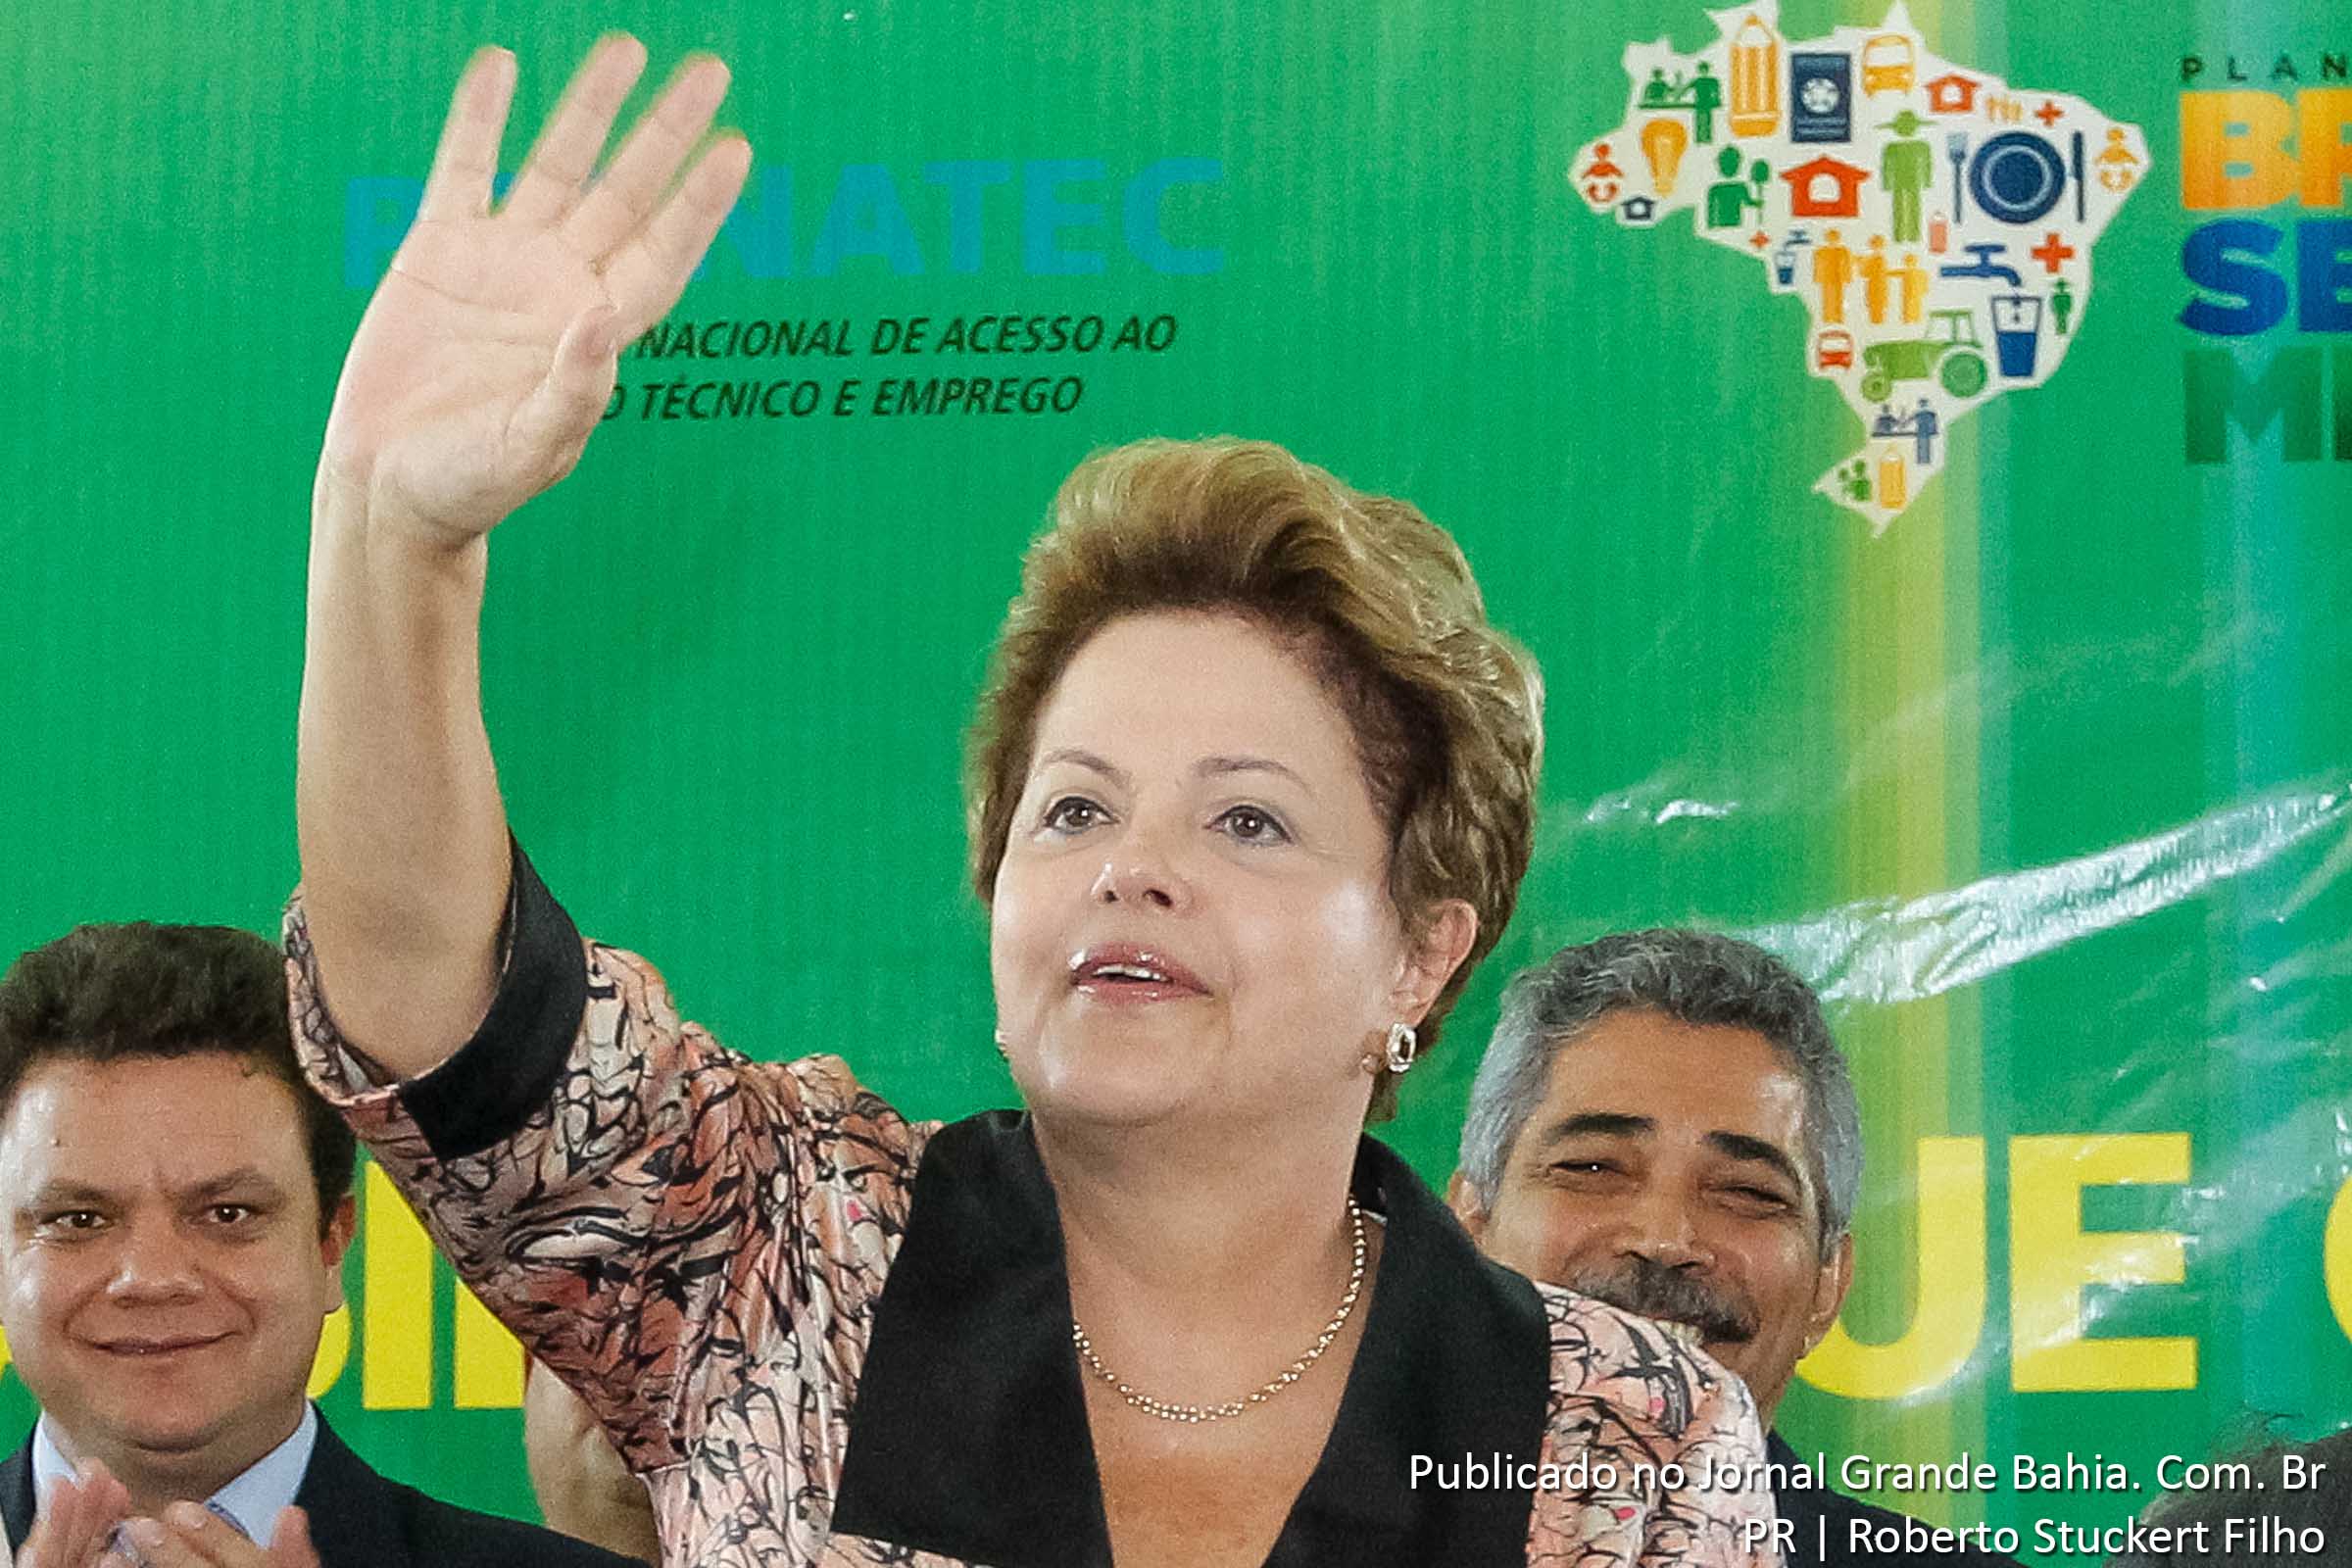 Pesquisa CNT/MDA mostra vitória da presidenta Dilma Rousseff, seja o candidato do PSB Eduardo Campos ou Marina Silva, mas o desejo por mudança está claro.